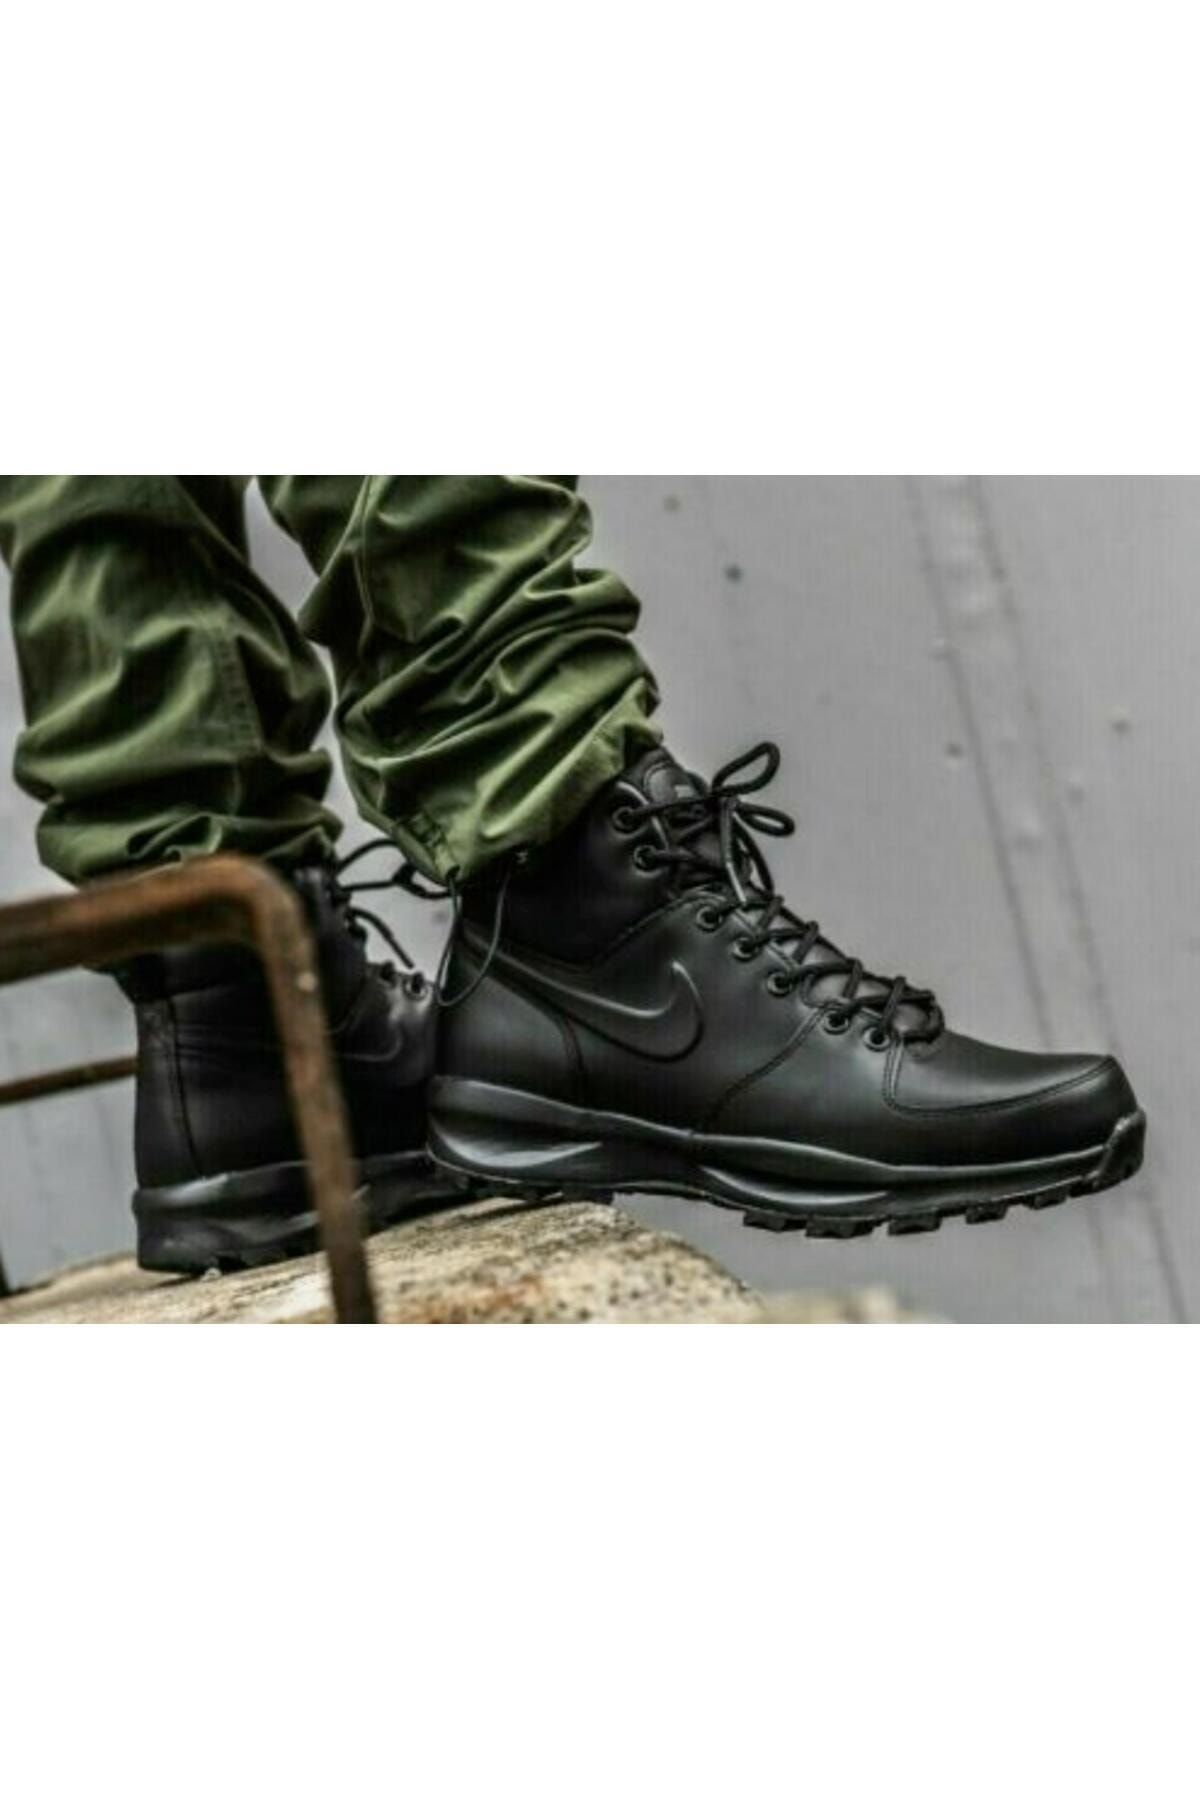 Nike Manoa Leather Erkek Siyah Outdoor Bot 454350-003 (DAR KALIP)